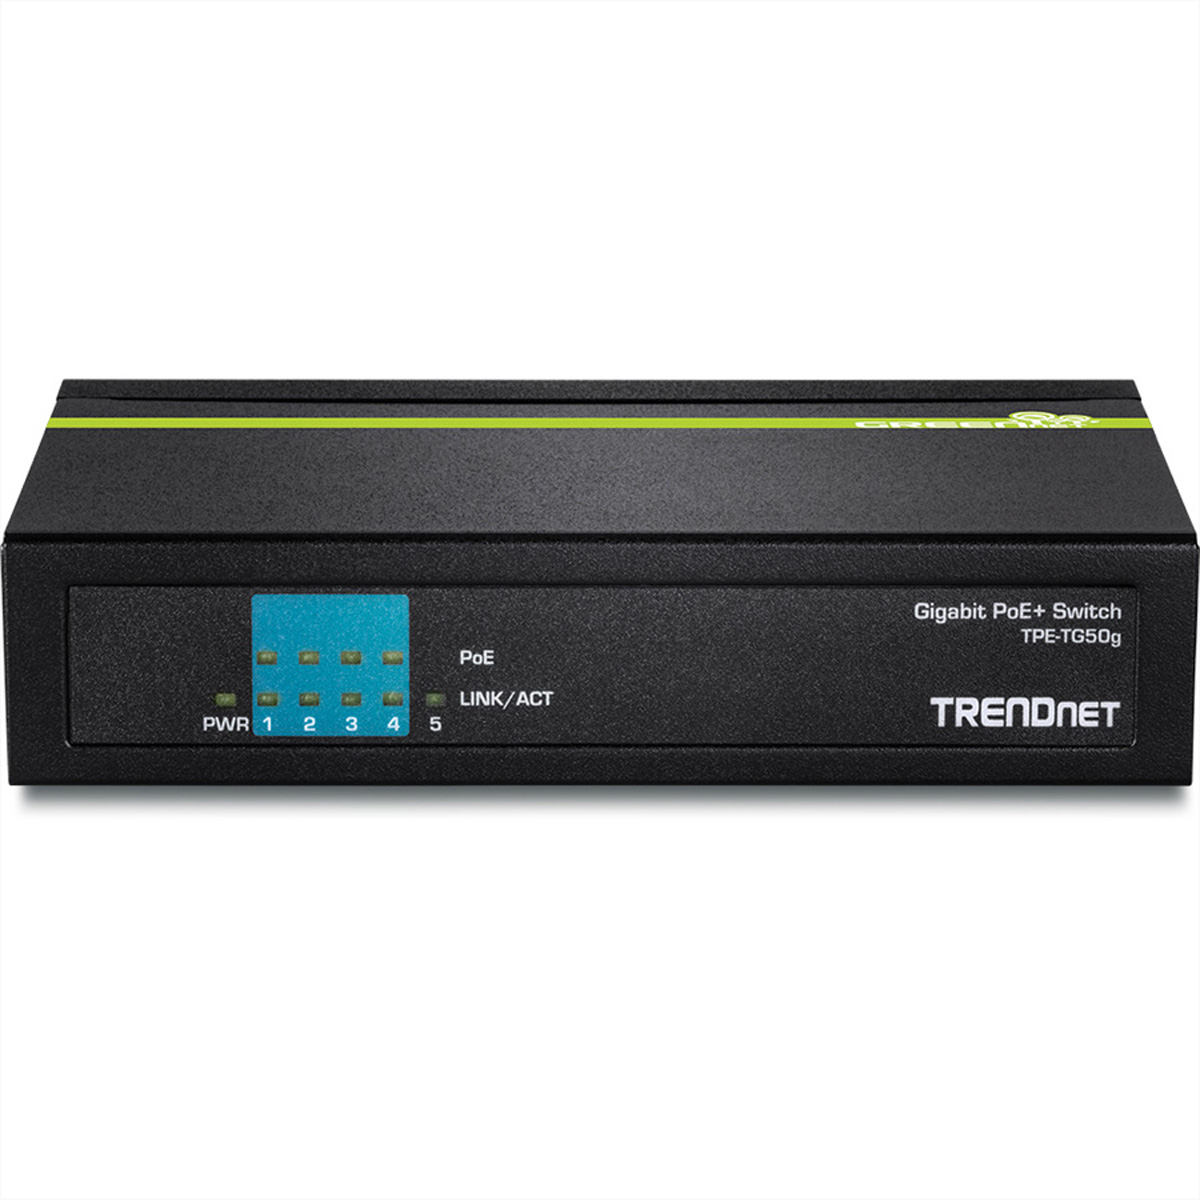 Switch PoE+ 5-Port Ethernet TRENDNET TPE-TG50g Switch Gigabit Gigabit